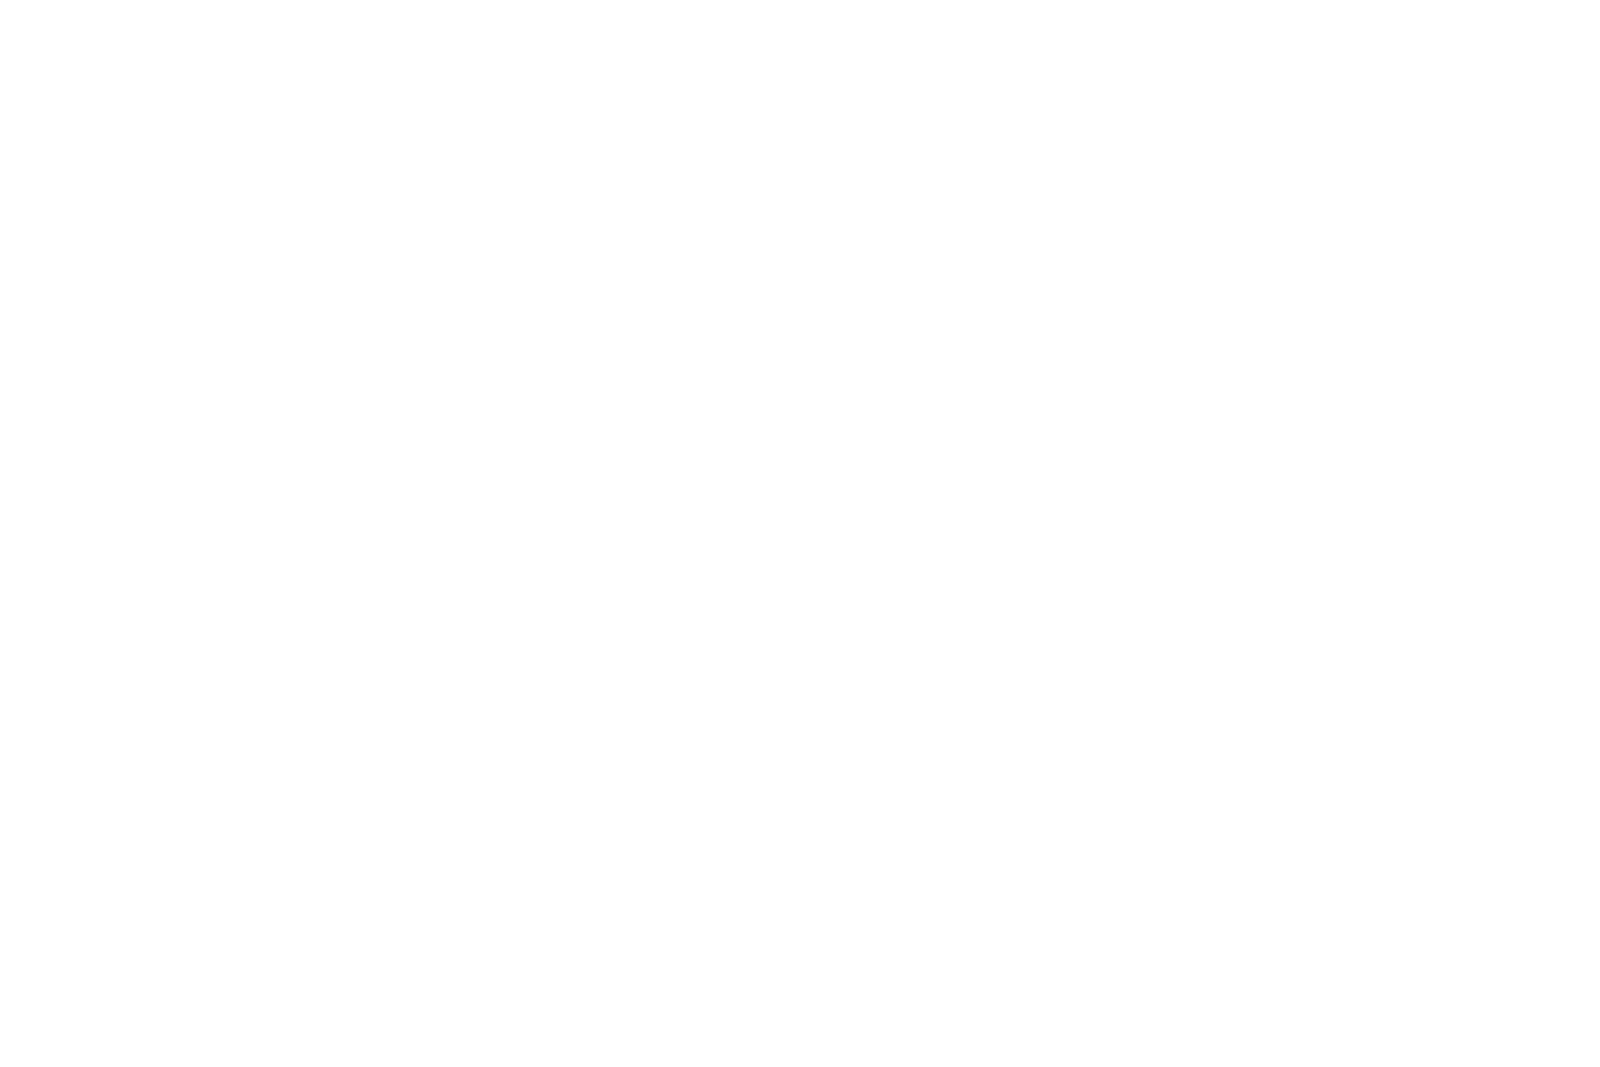 Парусник Фредерик Шопен, фото Машкова Елена белеет парус одинокий. Елена Машкова, Elena Mashkova — фотограф